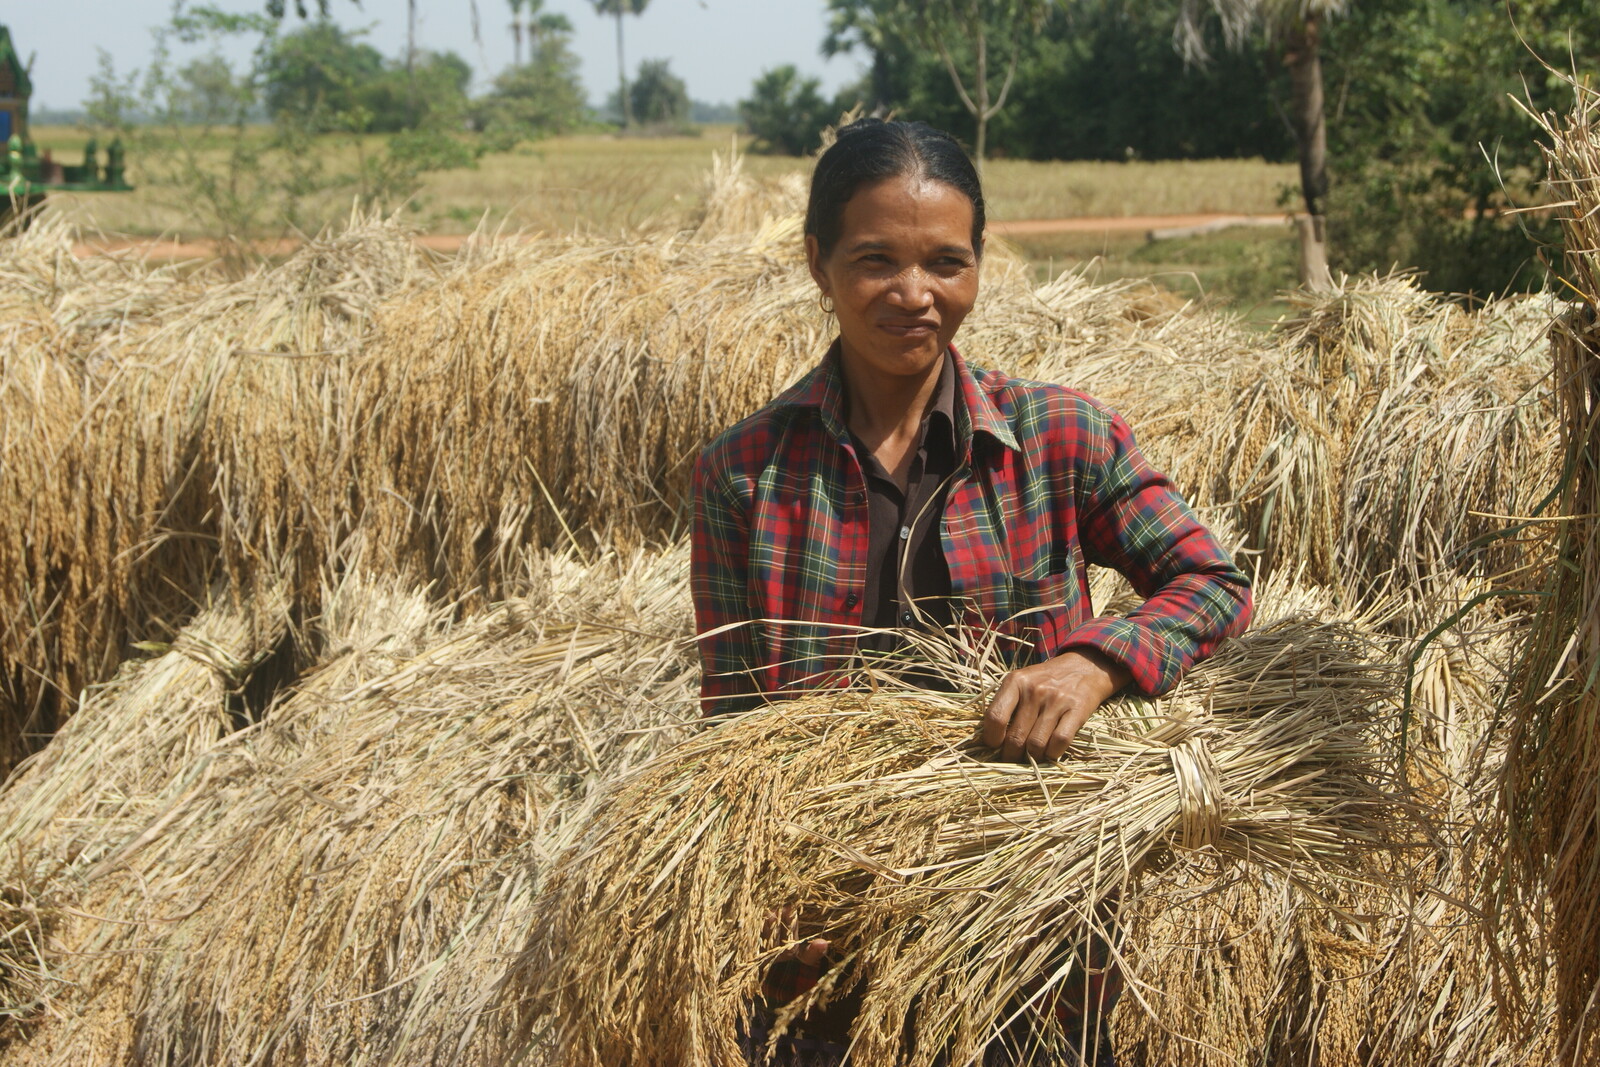 Eine Frau erntet Getreide in Kambodscha. Nach Überschwemmungen im Delta konnte den Menschen schnell geholfen werden und so eine Hungersnot verhindert werden.